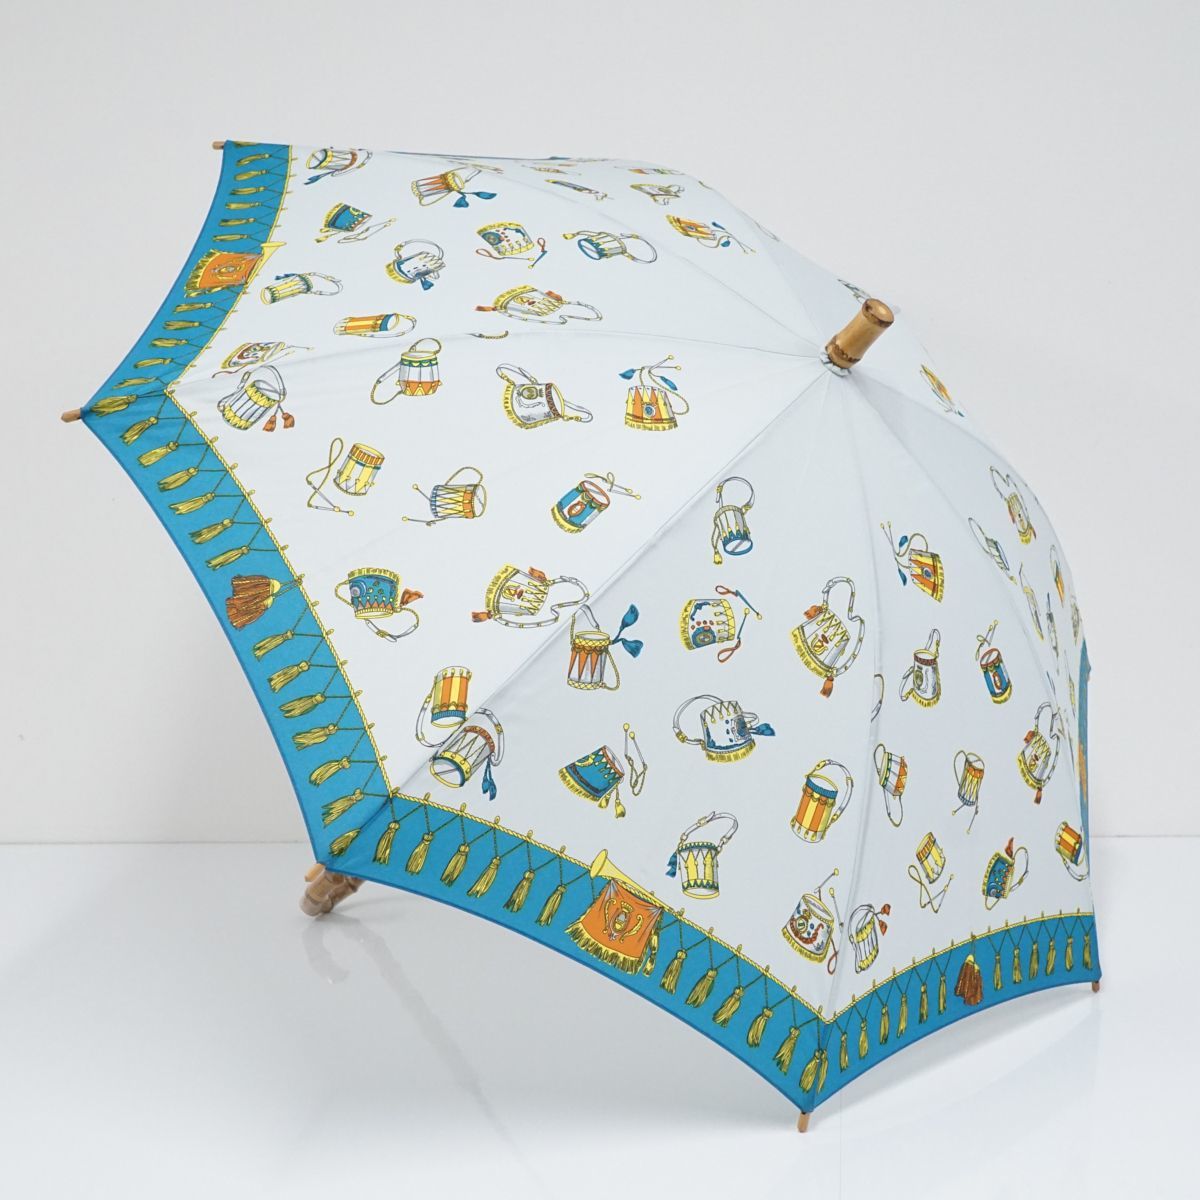 傘 manipuri マニプリ USED美品 日本製 高級 晴雨兼用 太鼓 ブルー アート 寒竹手元 バンブー 55cm KR S9244